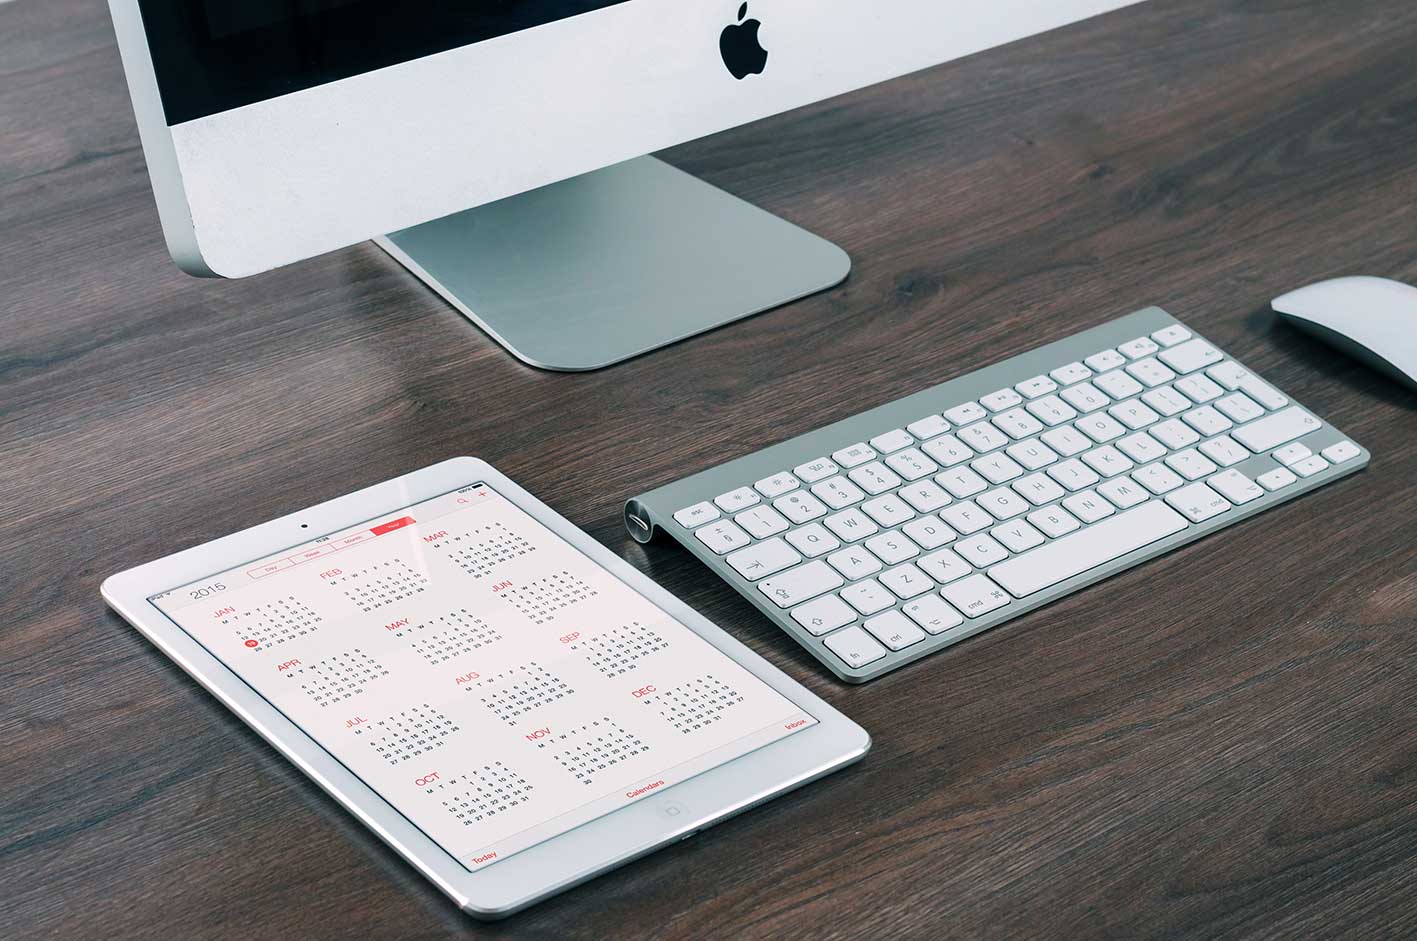 zu sehen ist ein Tablet auf einem Schreibtisch neben einem Mac. Auf dem iPad ist der Kalender geöffnet. Thema sind die Brückentage 2023. Bild: Pexels/Pixabay